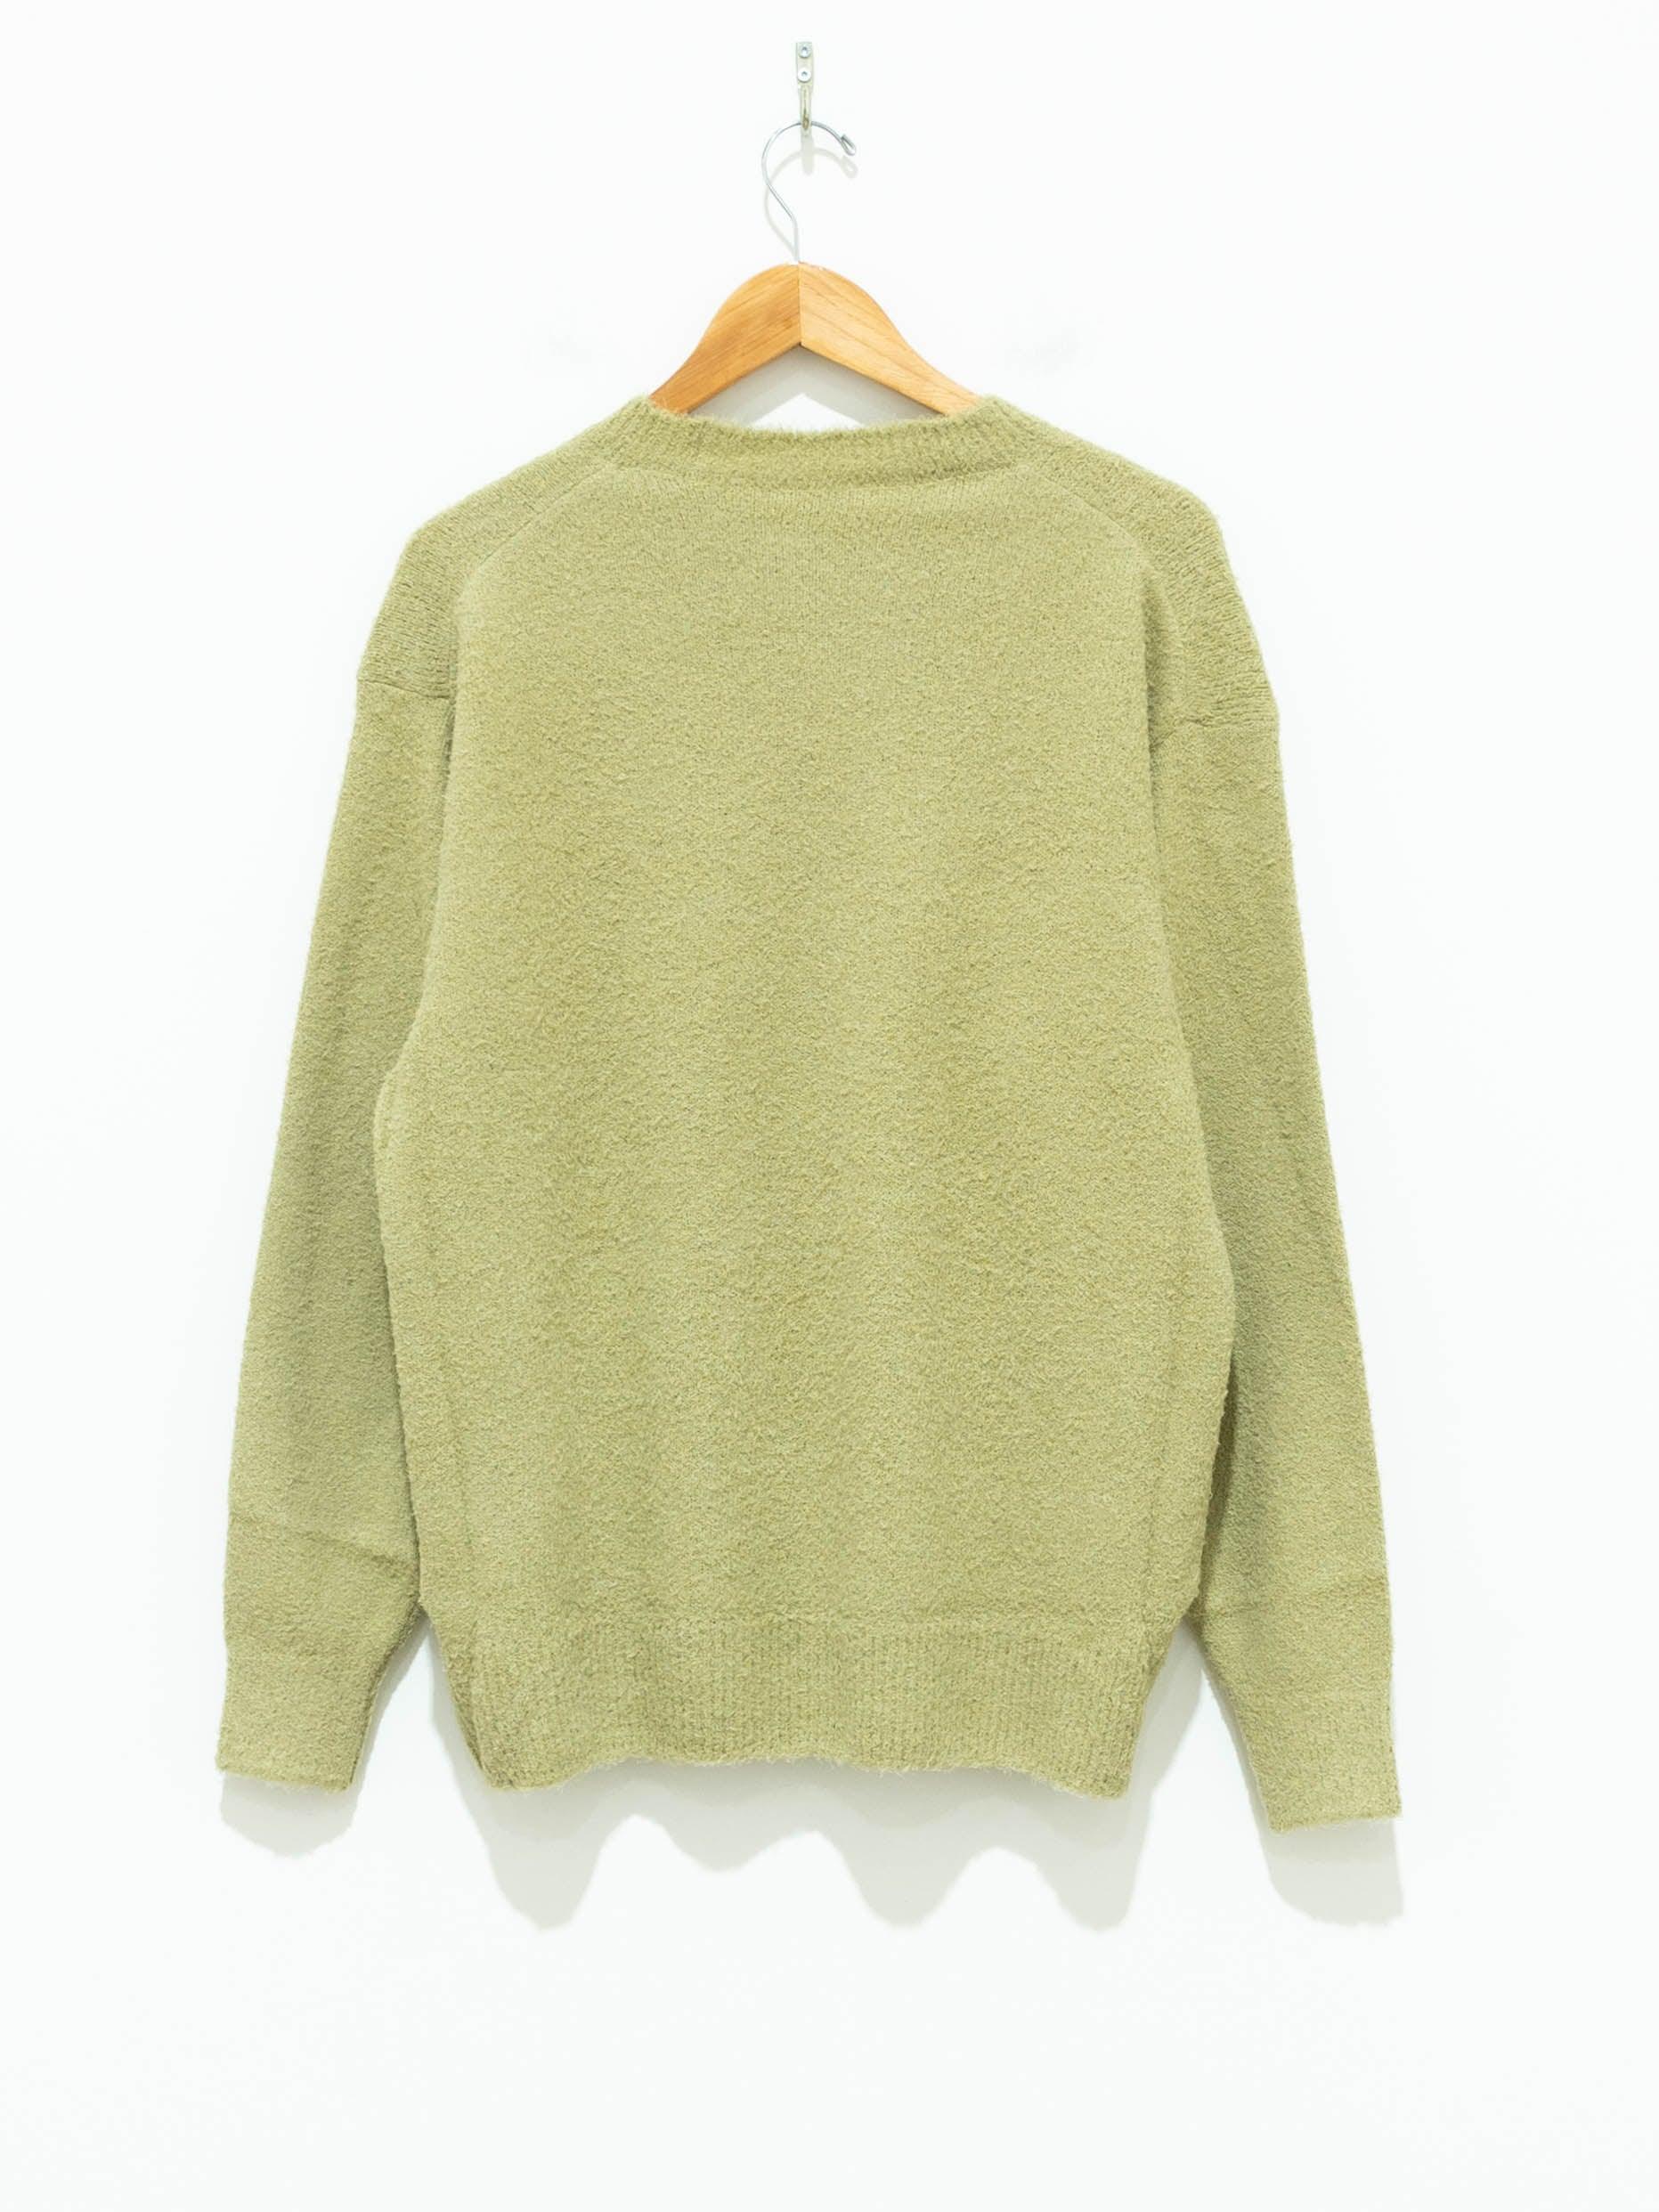 Namu Shop - Auralee Cotton Linen Cut Shaggy Knit Pullover - Light Green